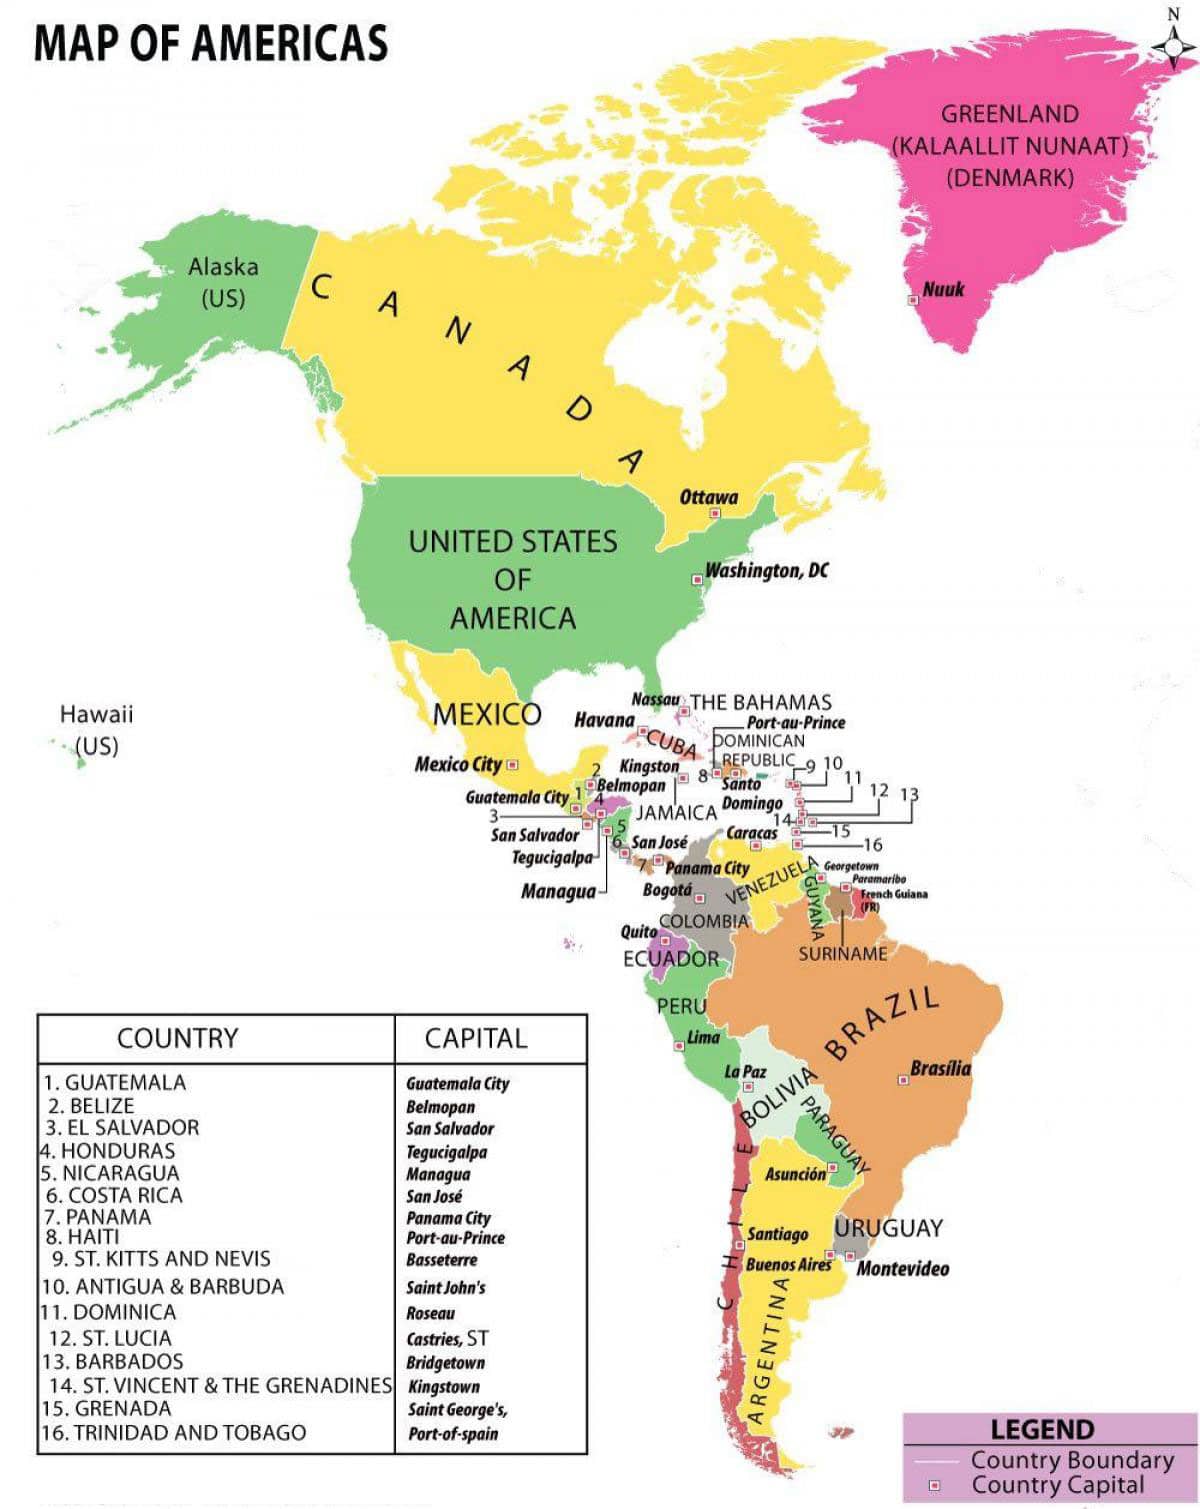 Bản đồ thế giới và bản đồ chi tiết các châu lục [cập nhật 2023]